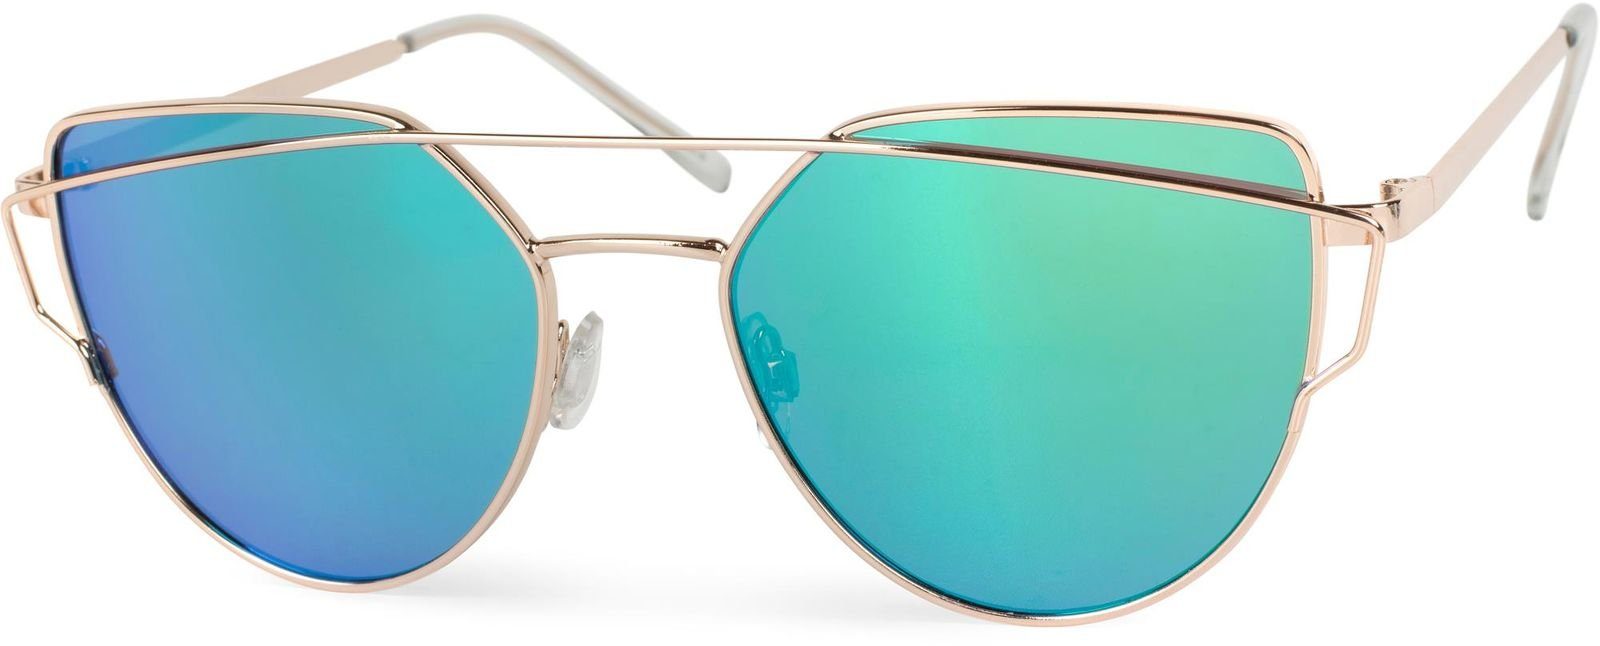 Viele neue Artikel verfügbar styleBREAKER Sonnenbrille (1-St) Verspiegelt Grün-Blau / Gold Gestell Glas verspiegelt